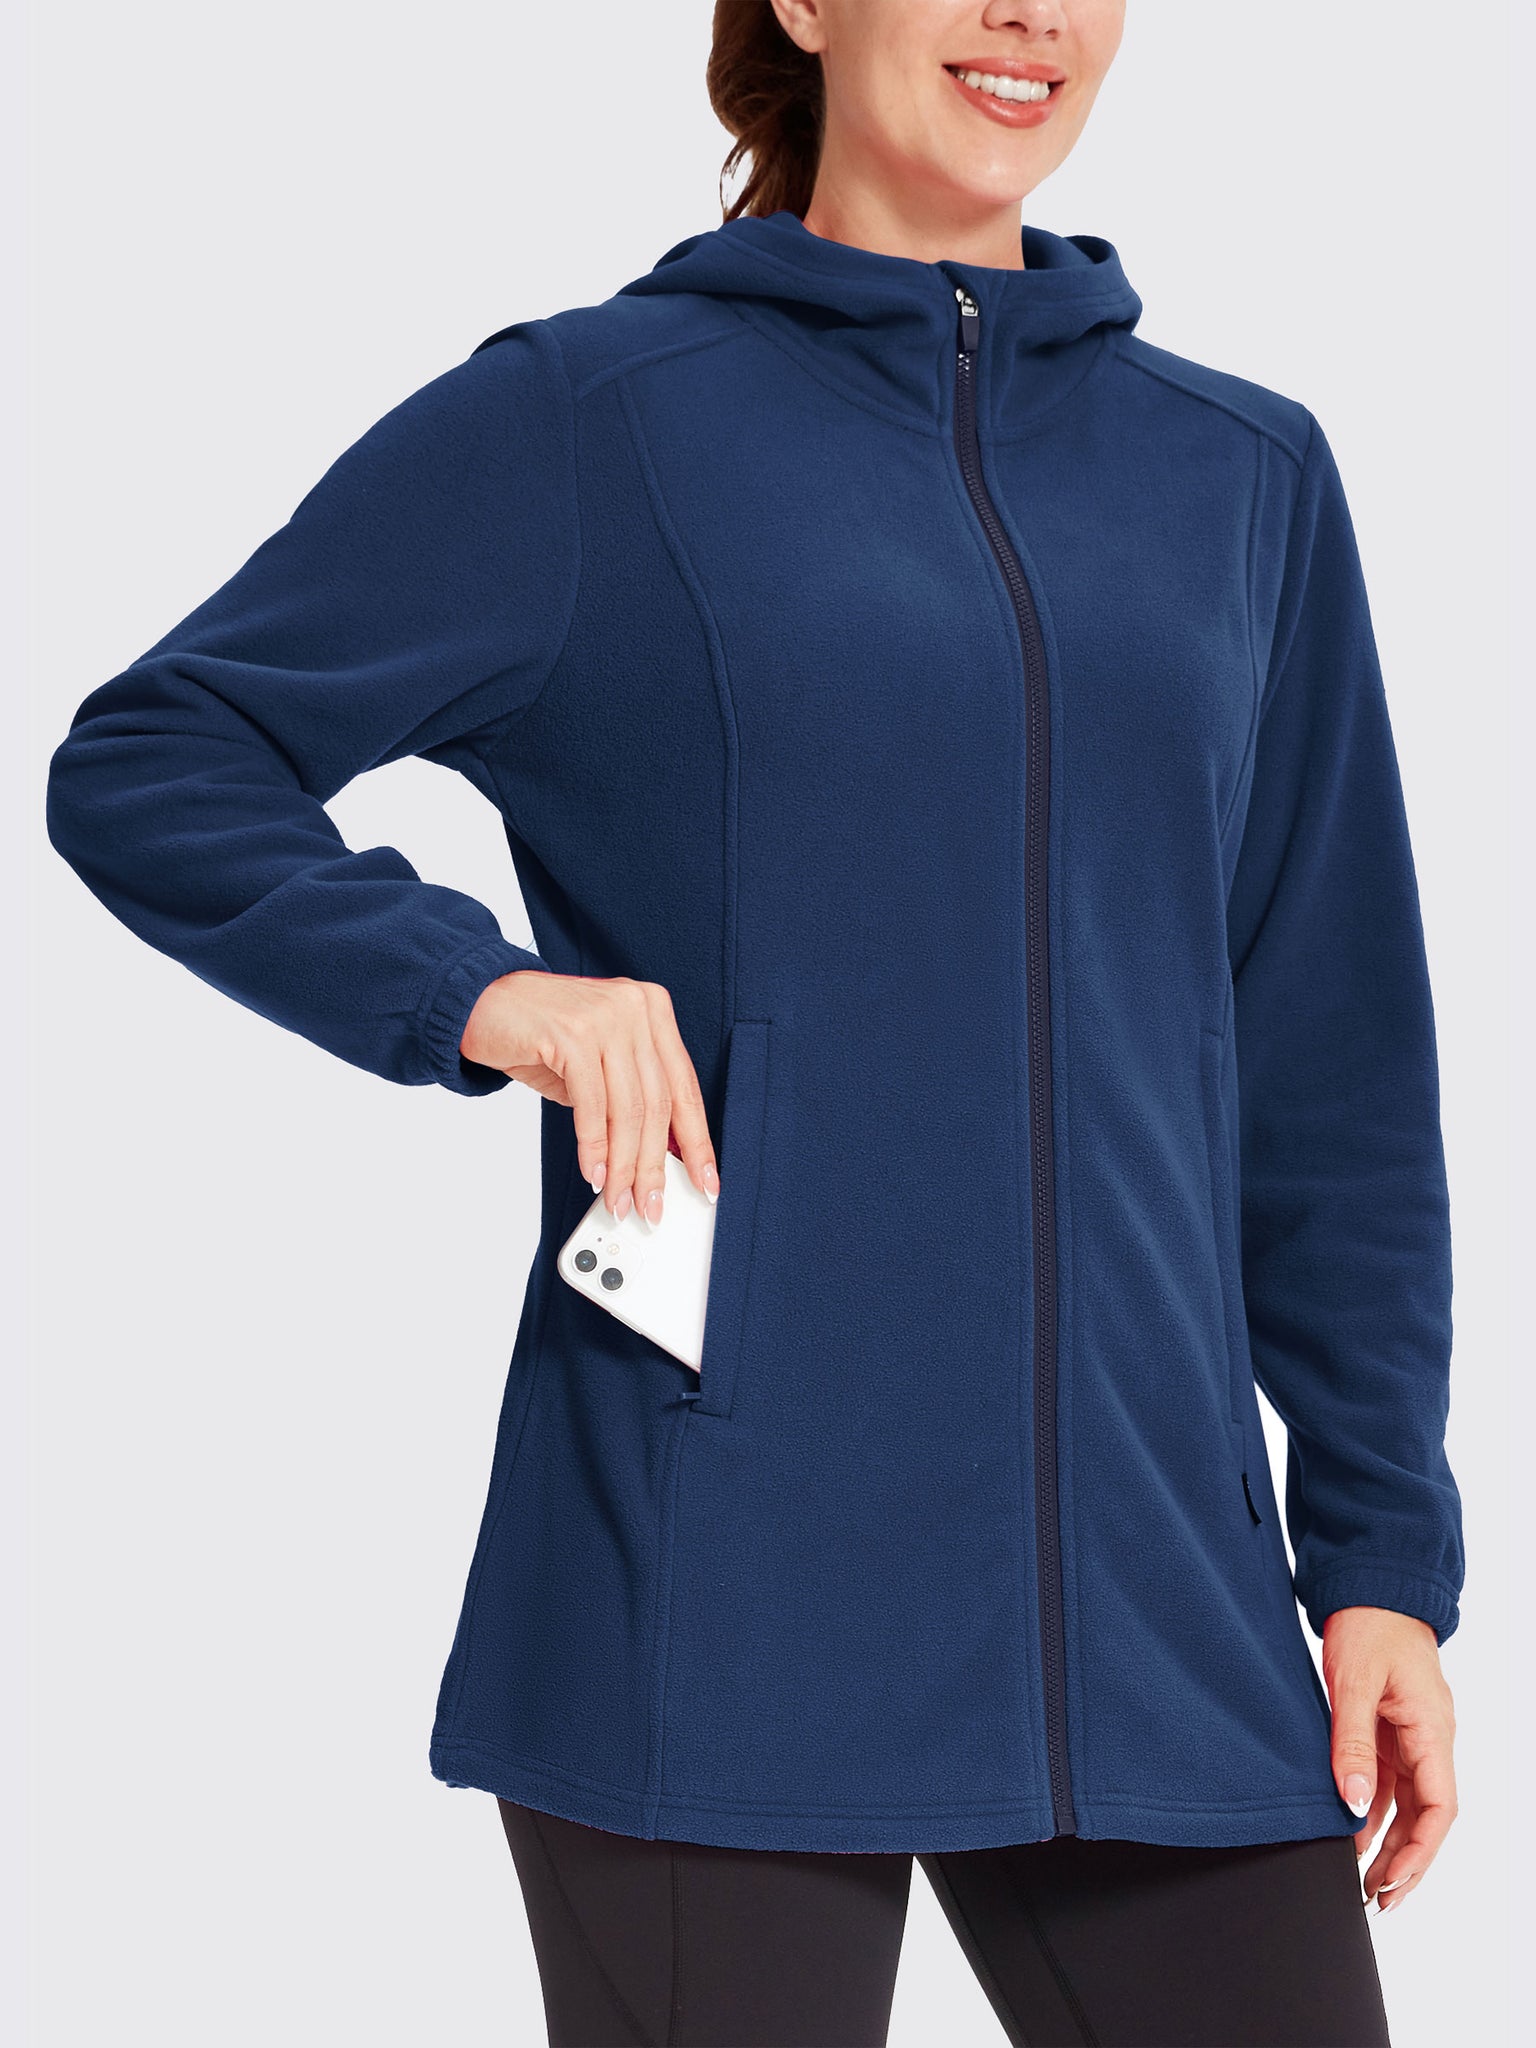 Women's Fleece Full-Zip Jacket Navy1